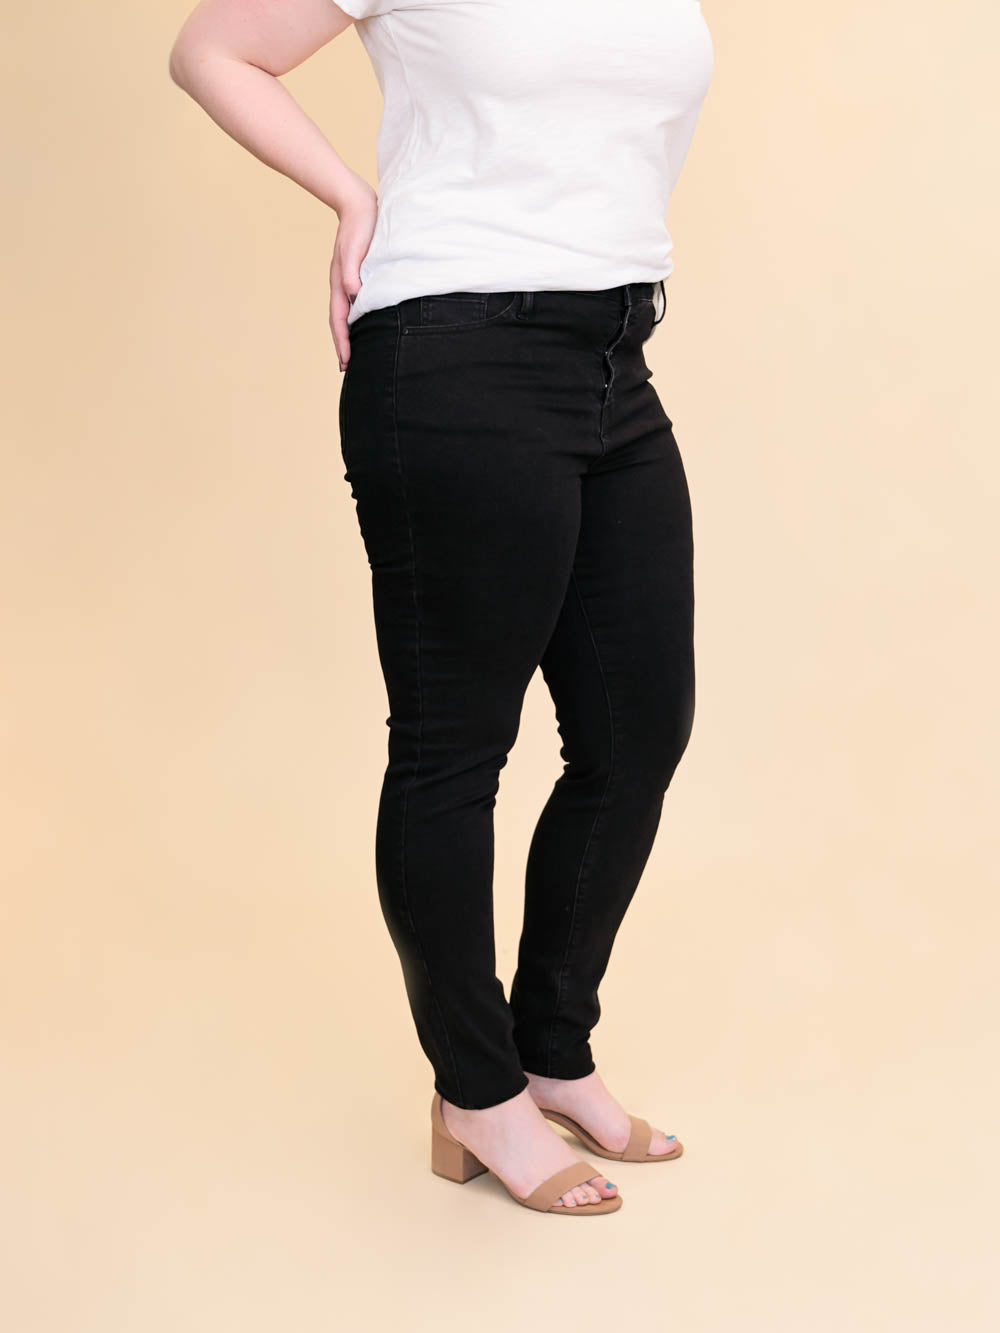 Black Tall Skinny Jeans: Tall Women's Black Jean